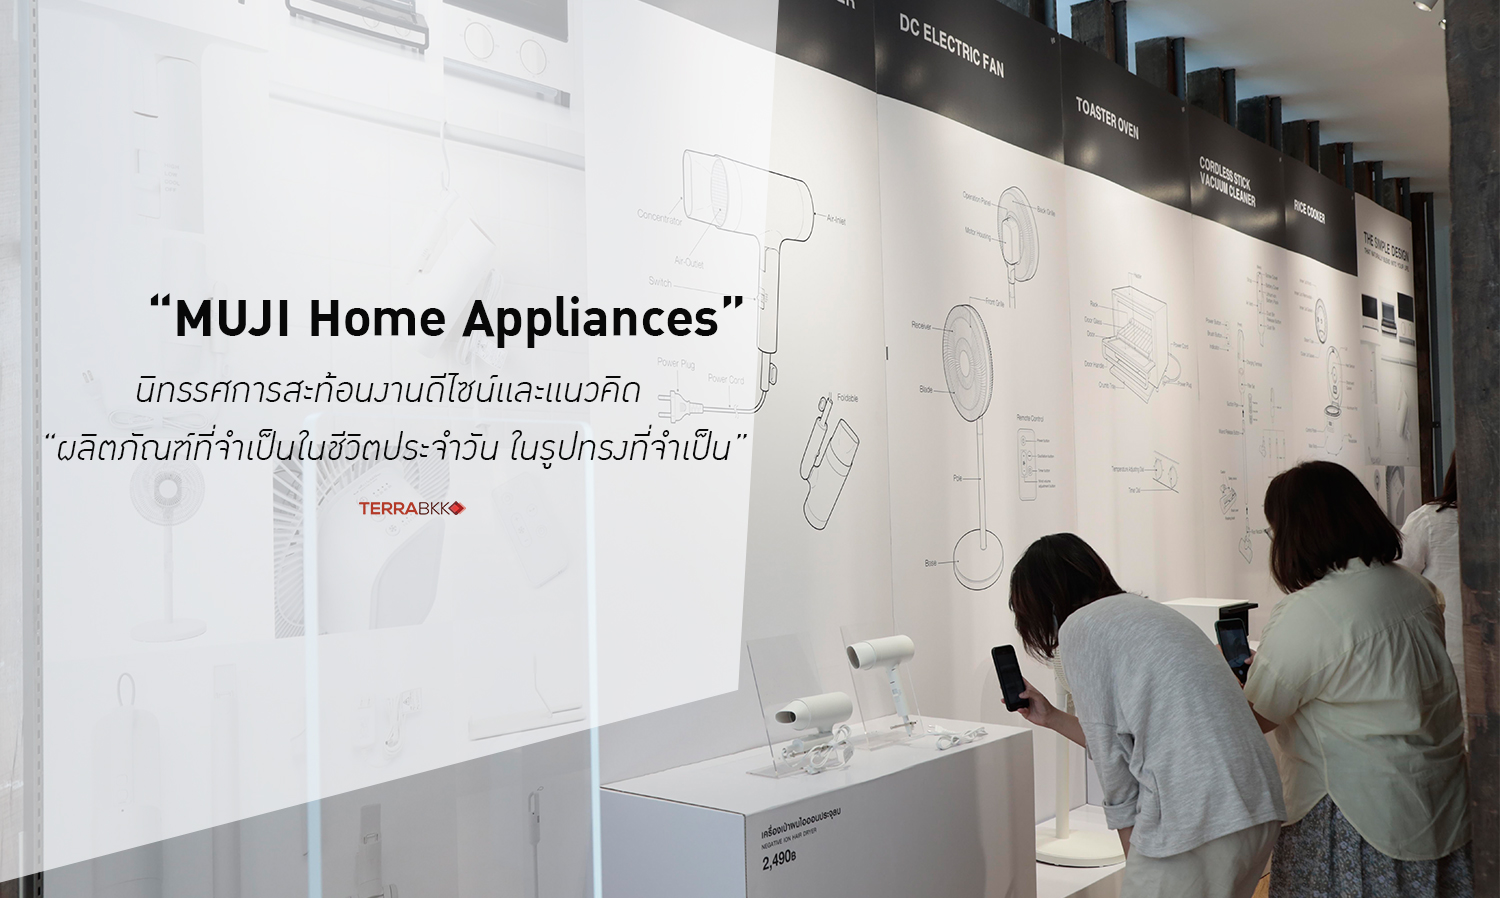 นิทรรศการ “MUJI Home Appliances” สะท้อนงานดีไซน์และแนวคิด “ผลิตภัณฑ์ที่จำเป็นในชีวิตประจำวัน ในรูปทรงที่จำเป็น”